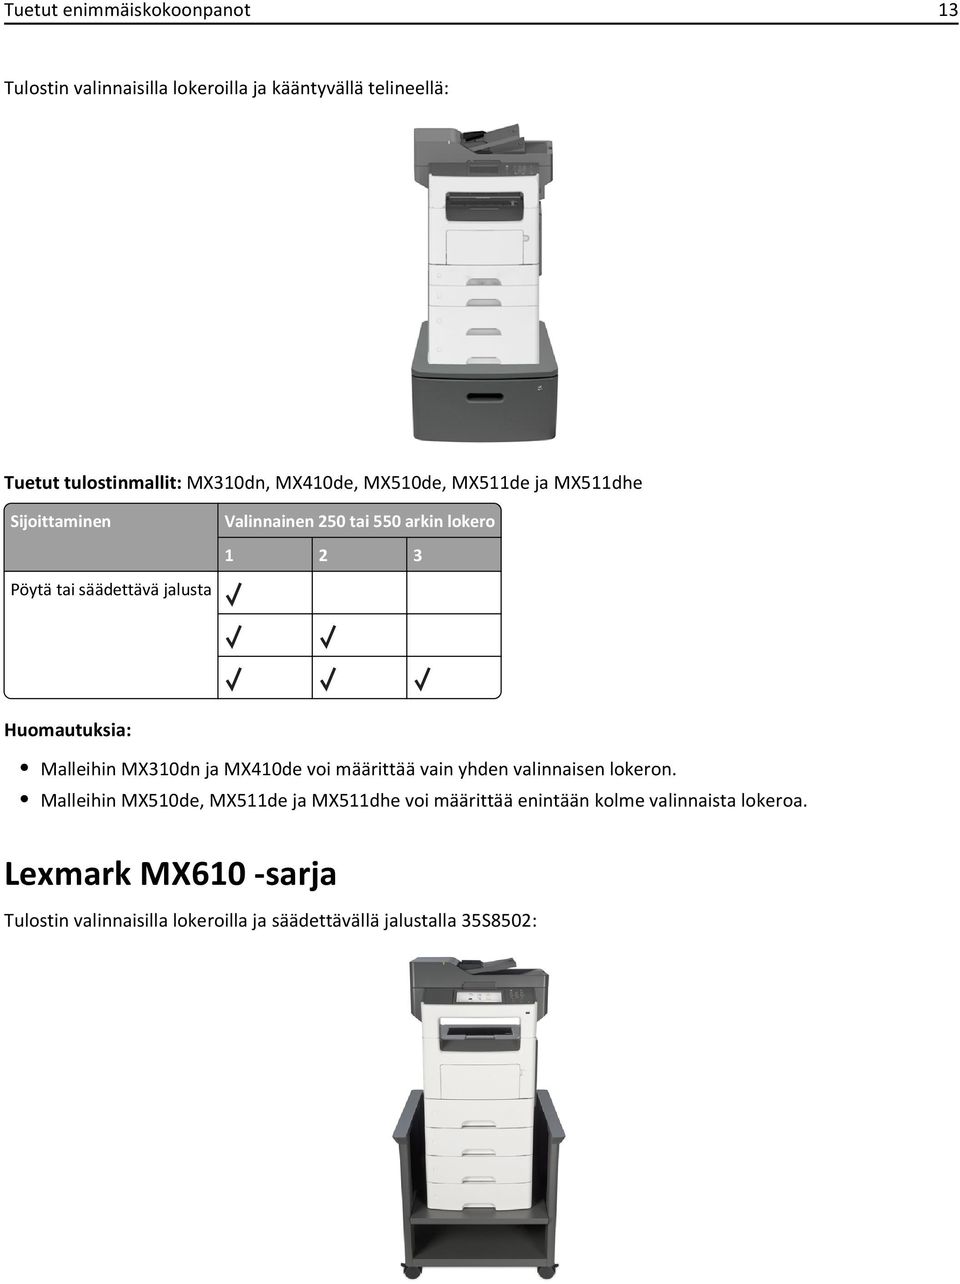 Huomautuksia: Malleihin MX310dn ja MX410de voi määrittää vain yhden valinnaisen lokeron.